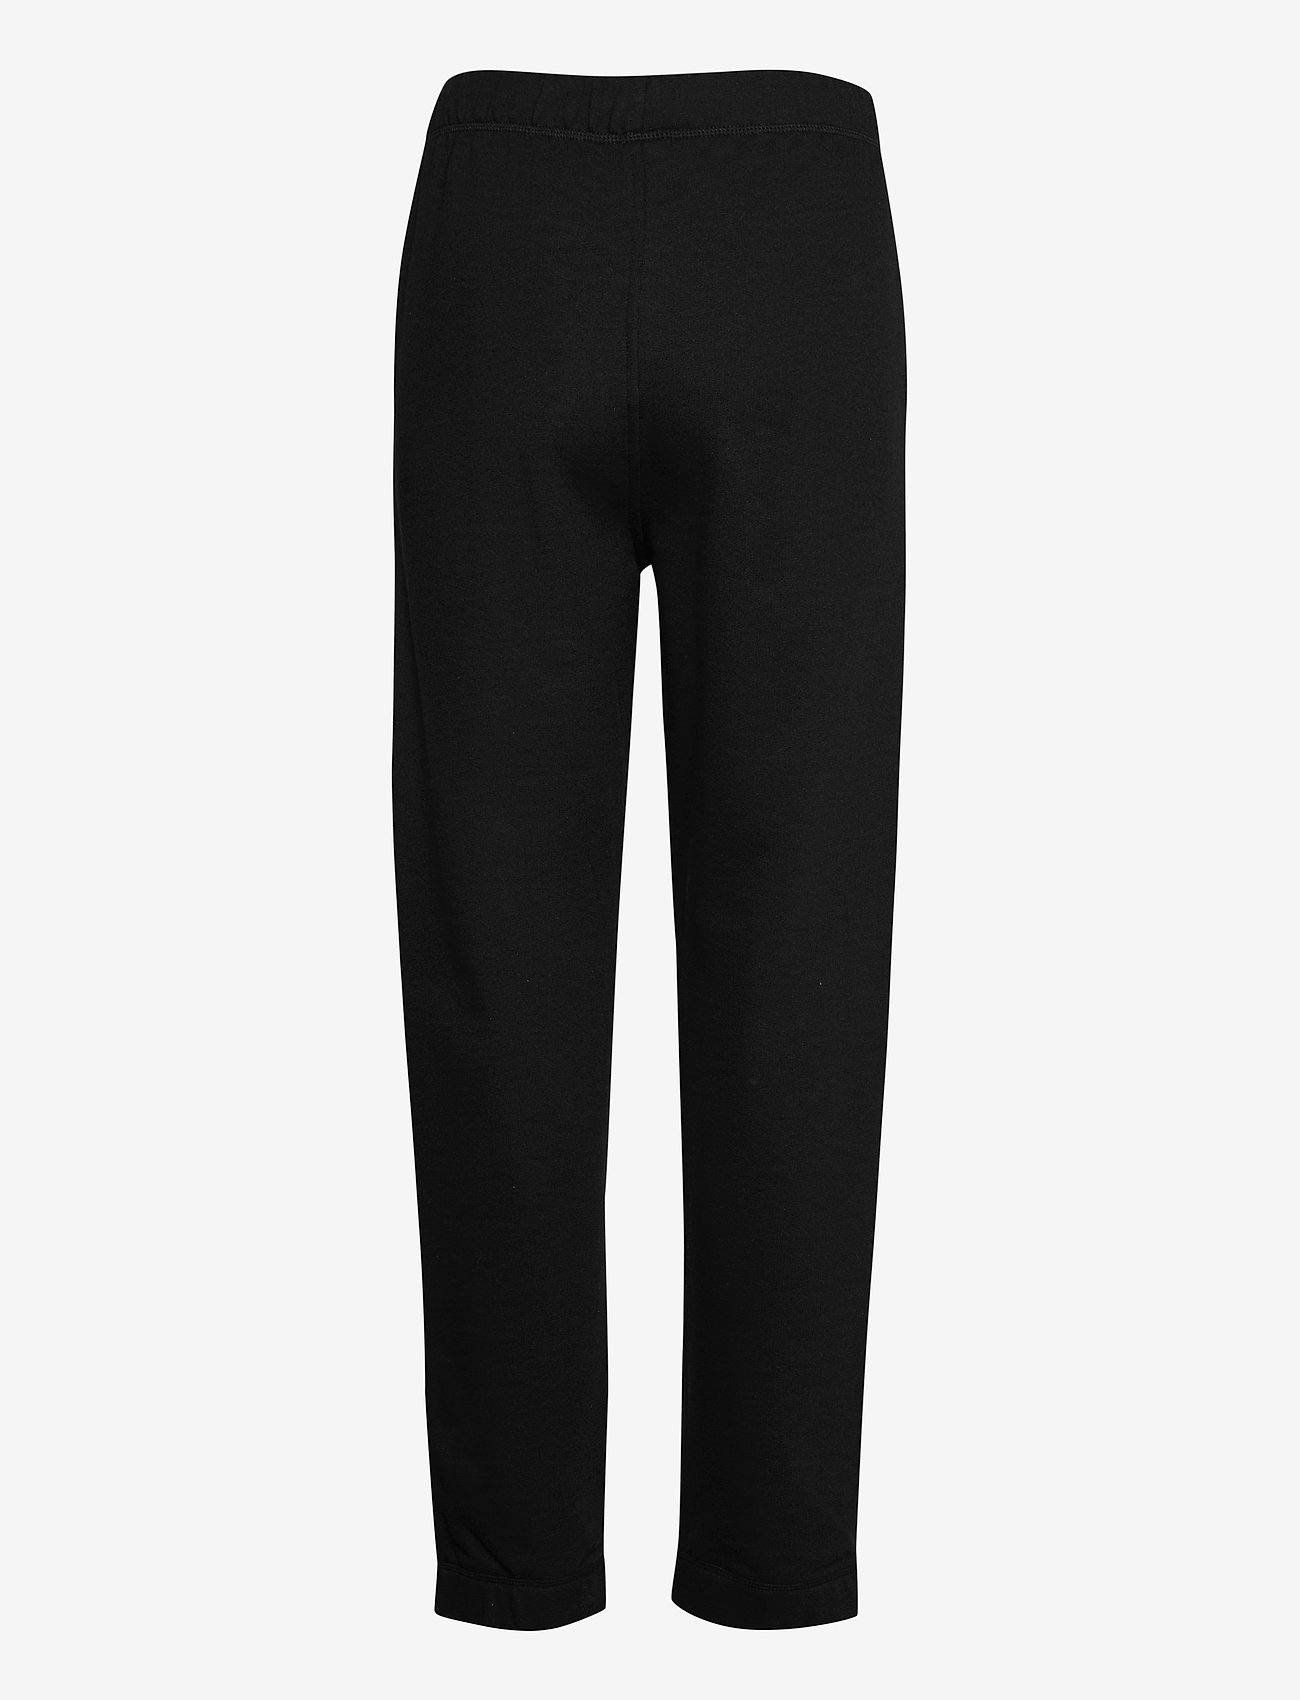 Ganni - Elasticated Pants - tøj - black - 1